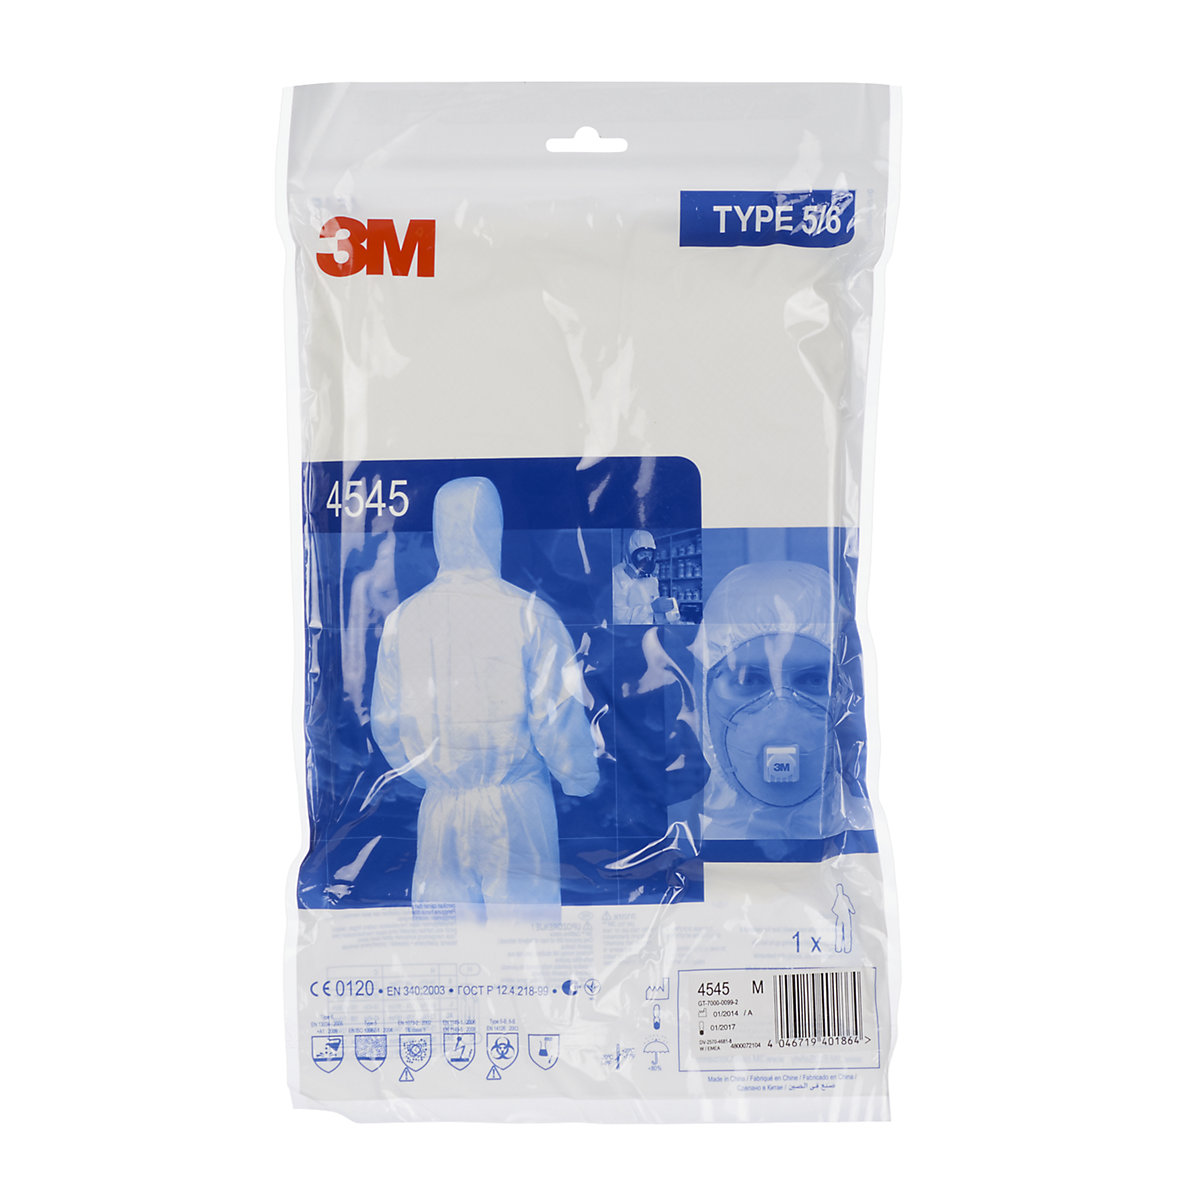 Zaščitno oblačilo za enkratno uporabo 4545 (tipa 5/6) – 3M (Slika izdelka 2)-1